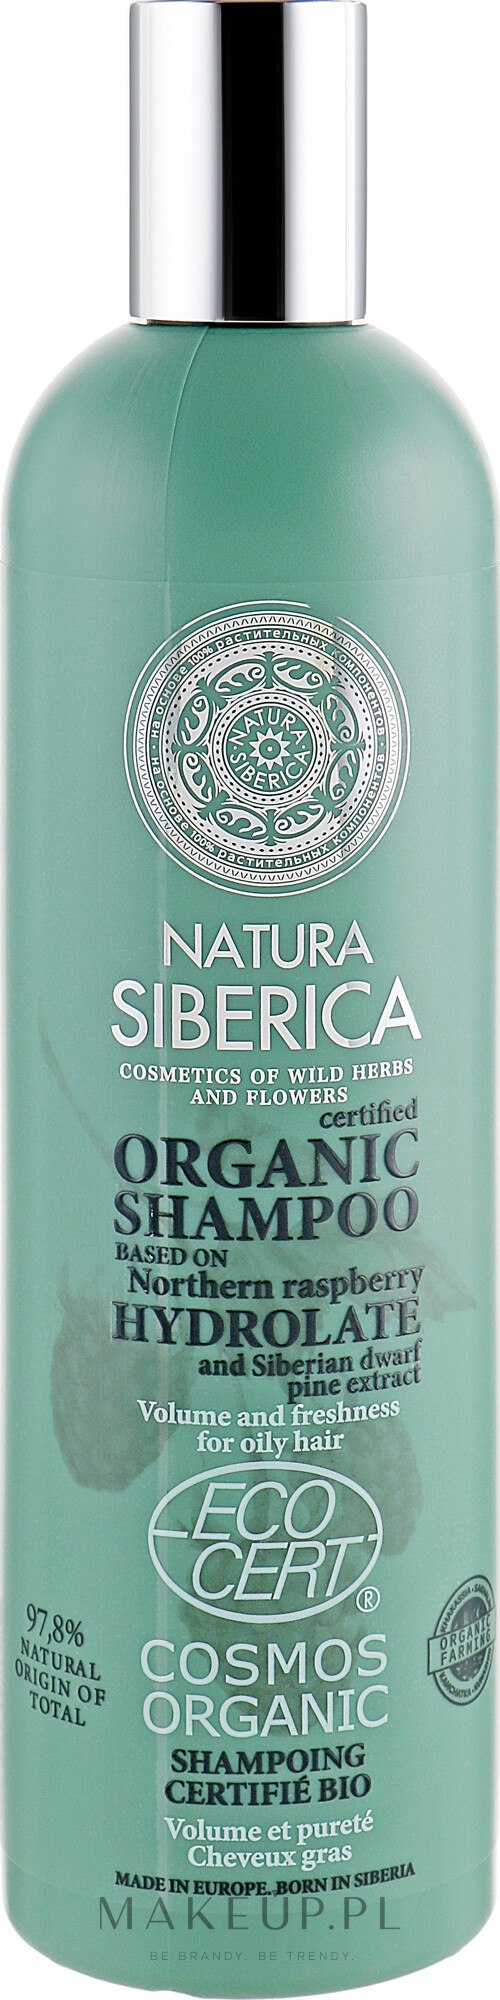 siberica szampon z octem szkockim